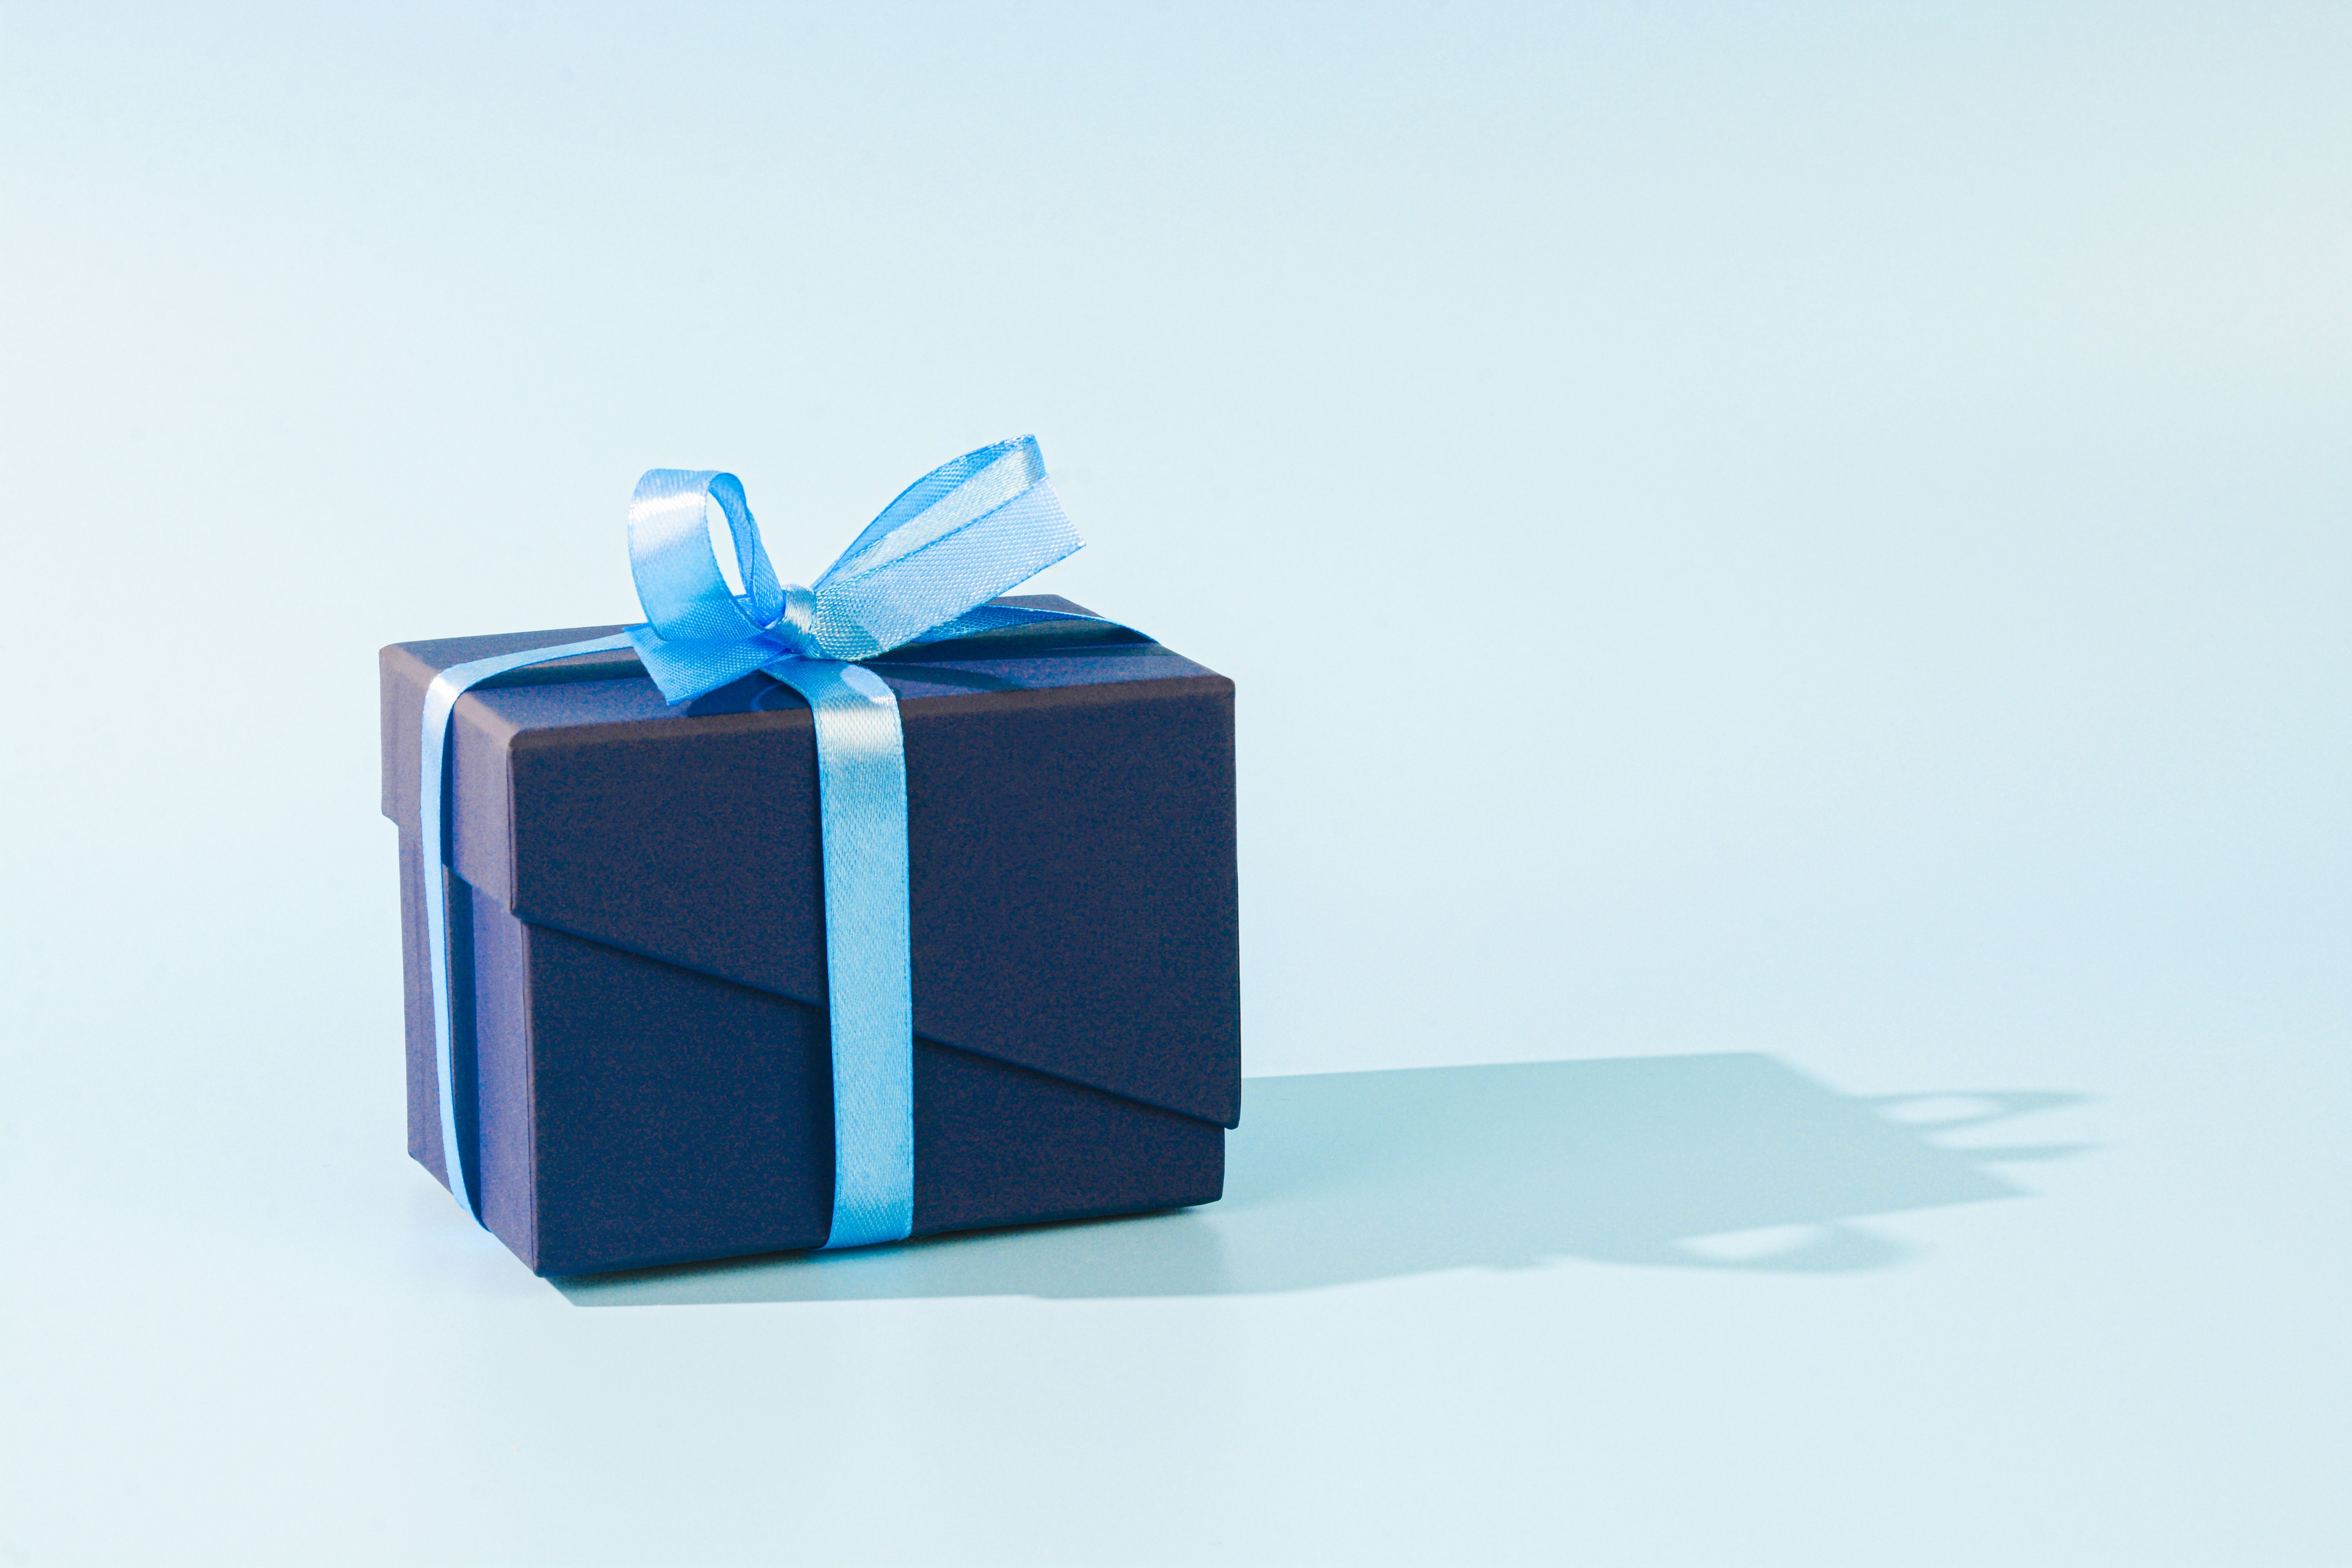 Eine blaue Geschenkbox | Quelle: Getty Images